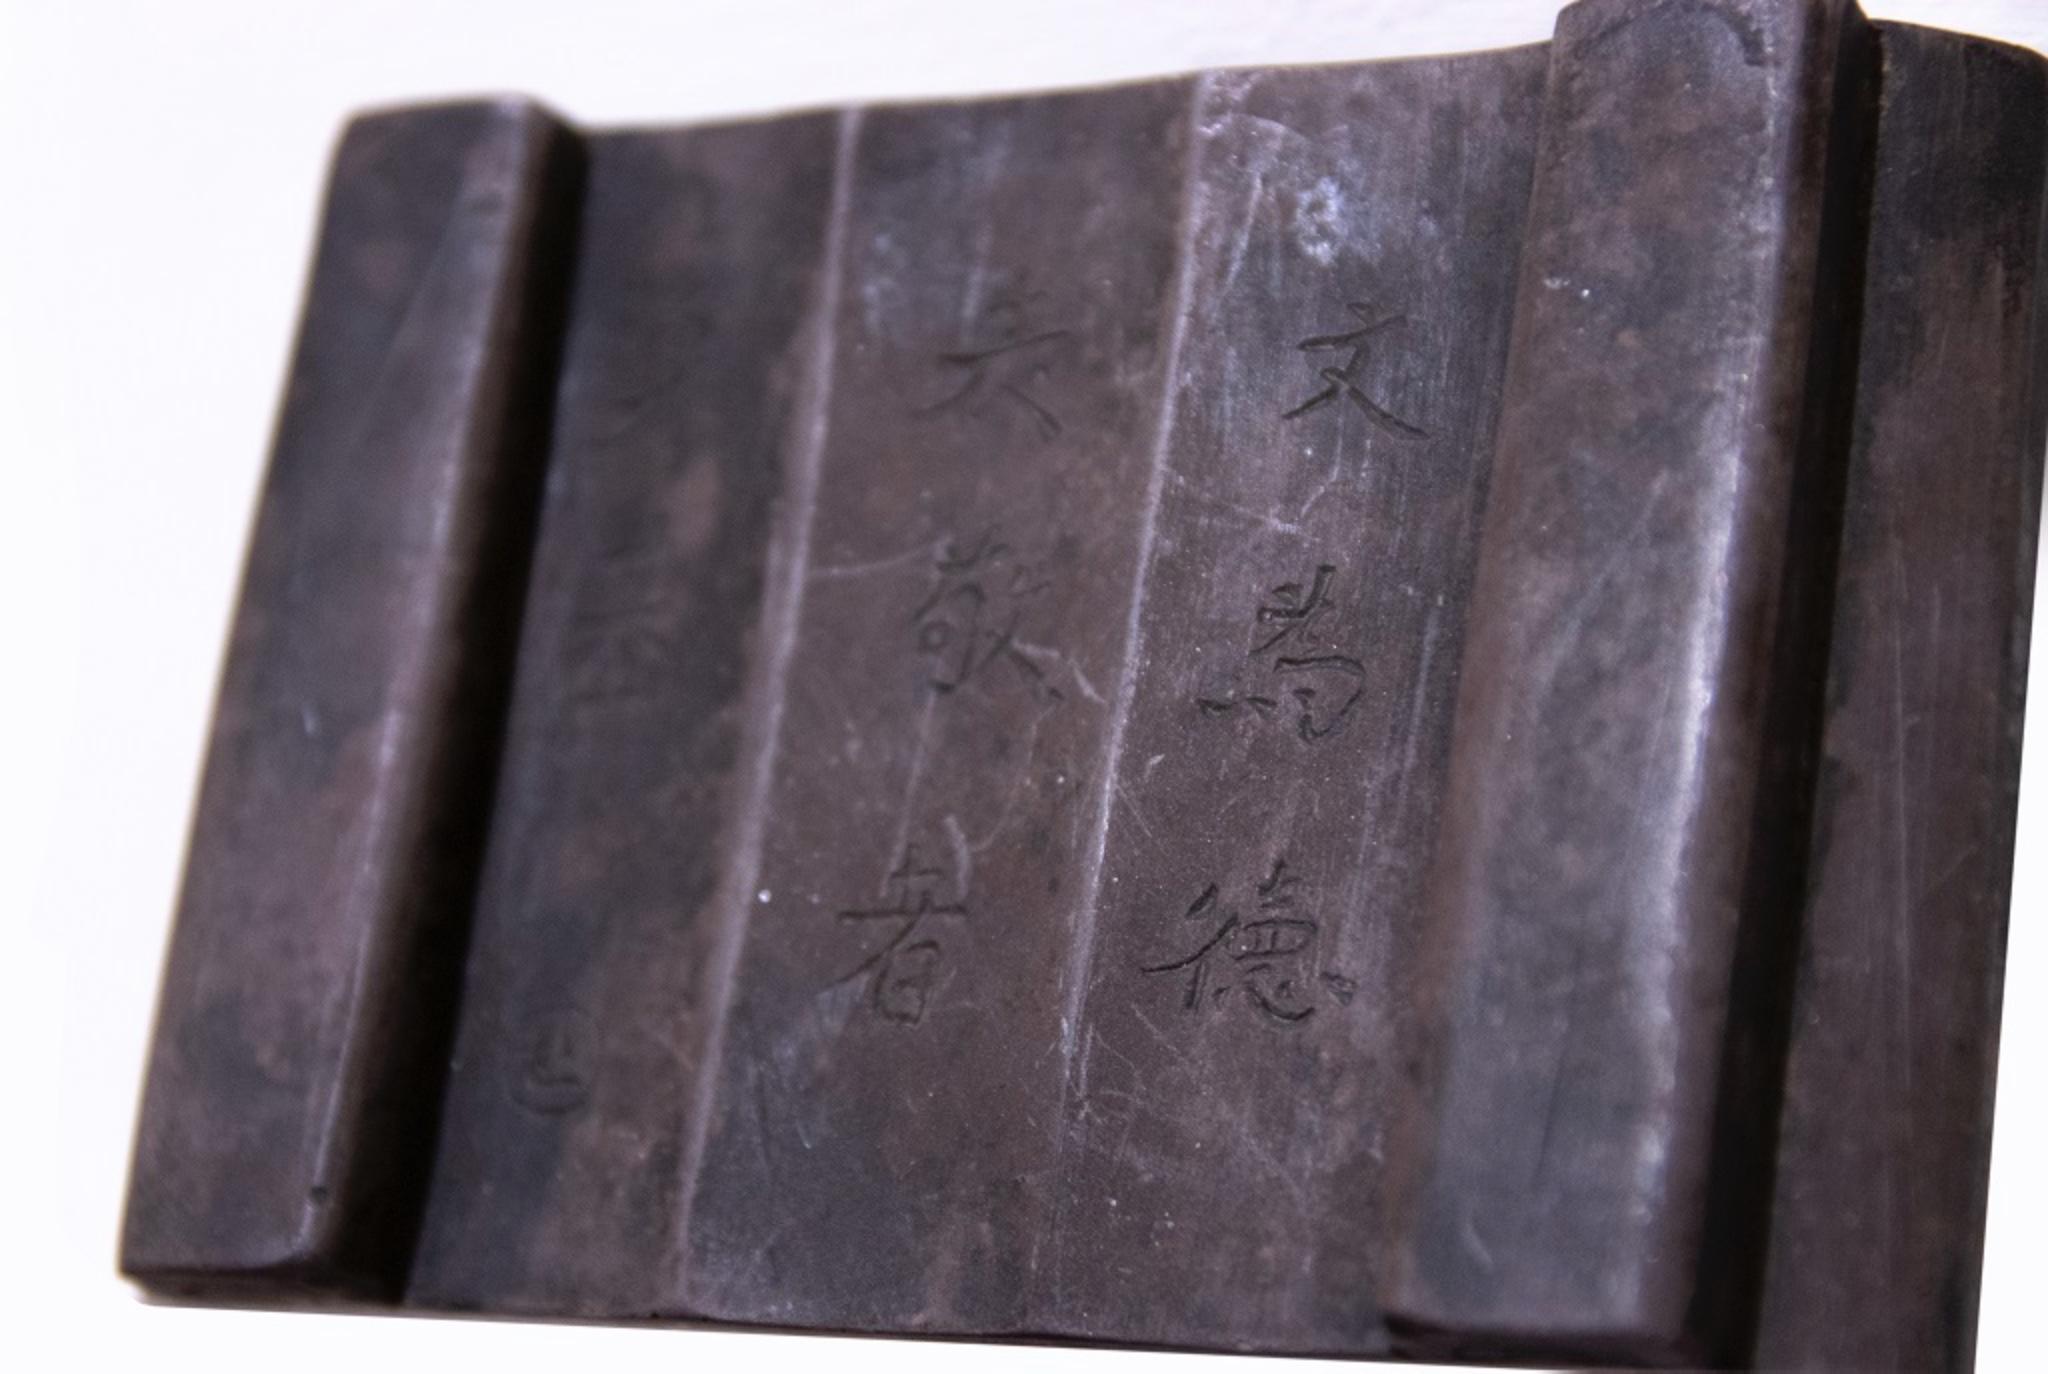 La tablette chinoise en bois est un objet chinois original réalisé en bois.

Dimensions : 11 x 2,3 x 7 cm.

Bon état.